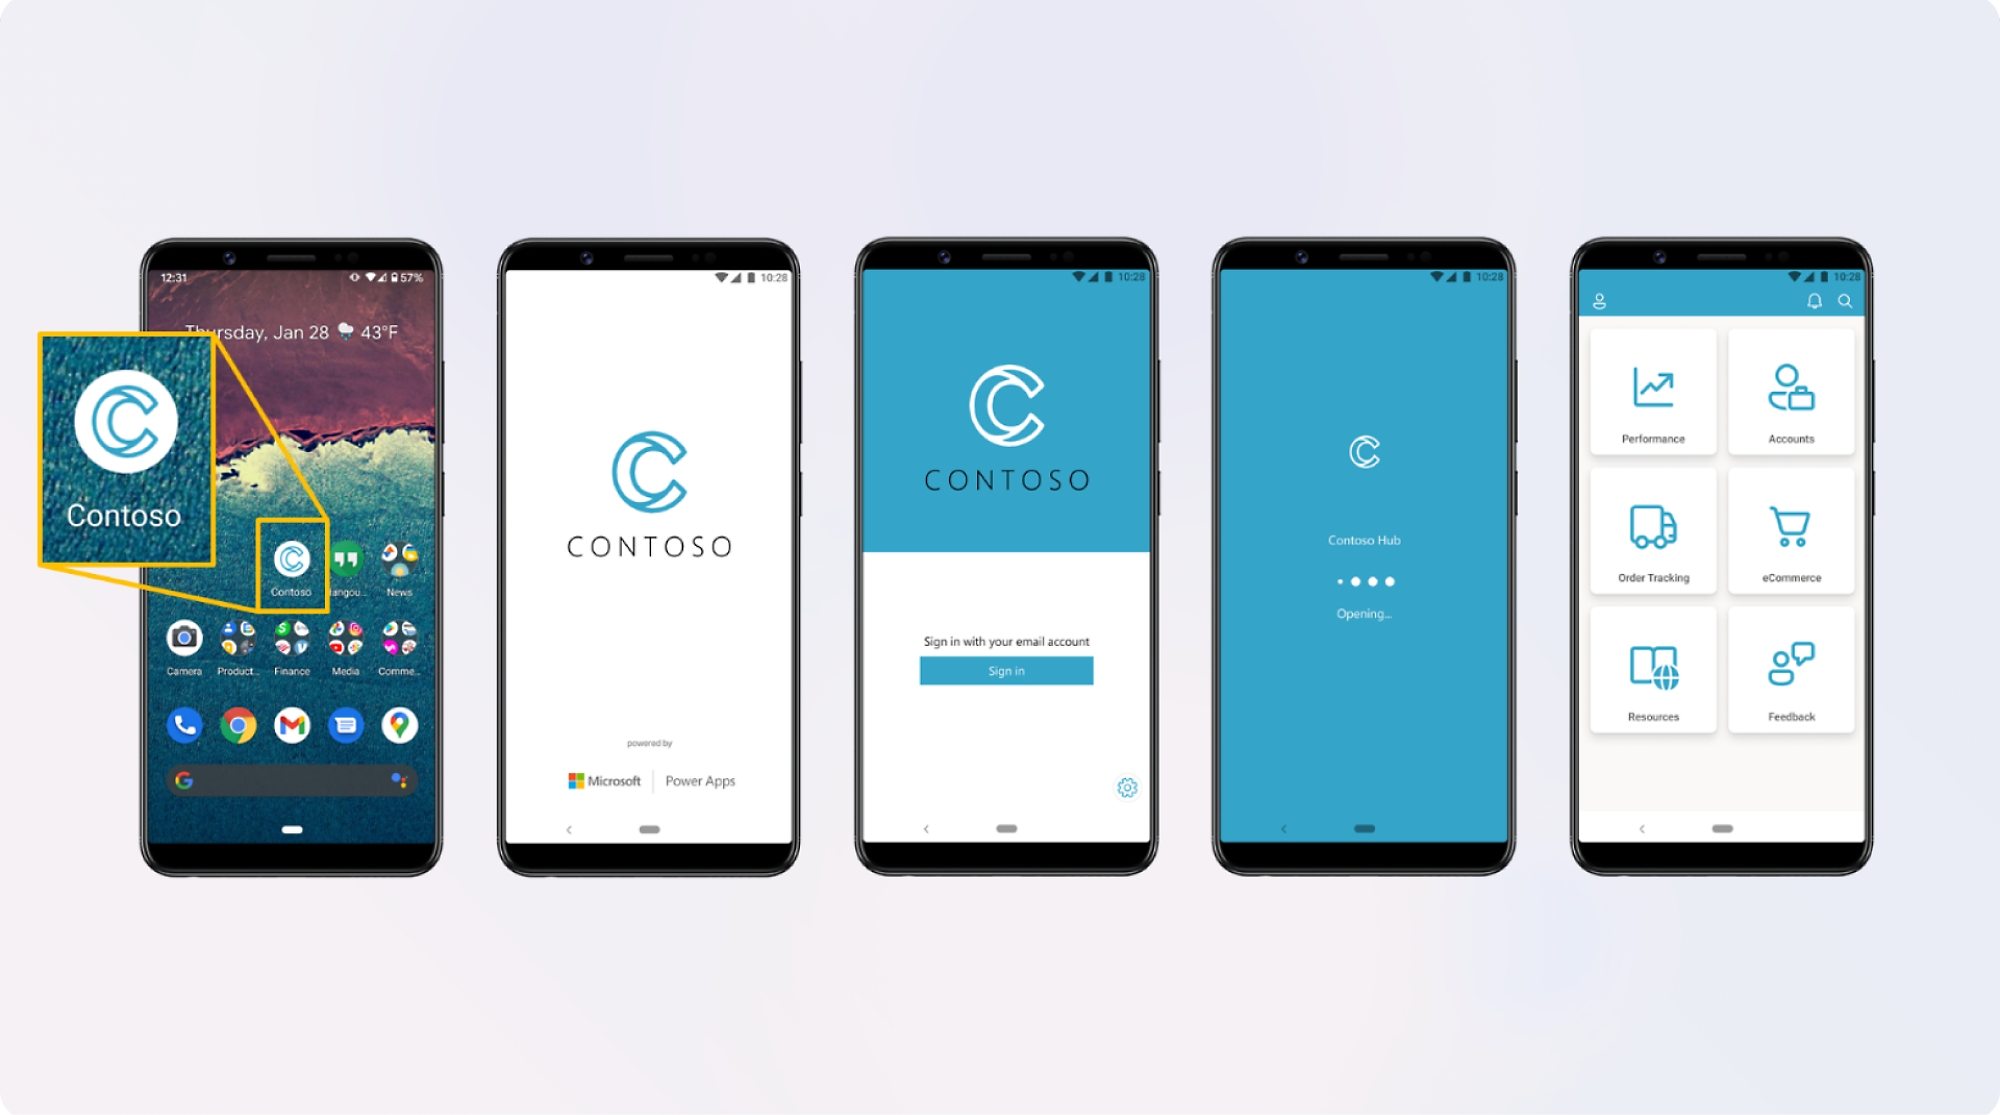 חמישה טלפונים חכמים המציגים מסכים שונים של האפליקציה "contoso", שמציגה את דף הכניסה, מסך הבית